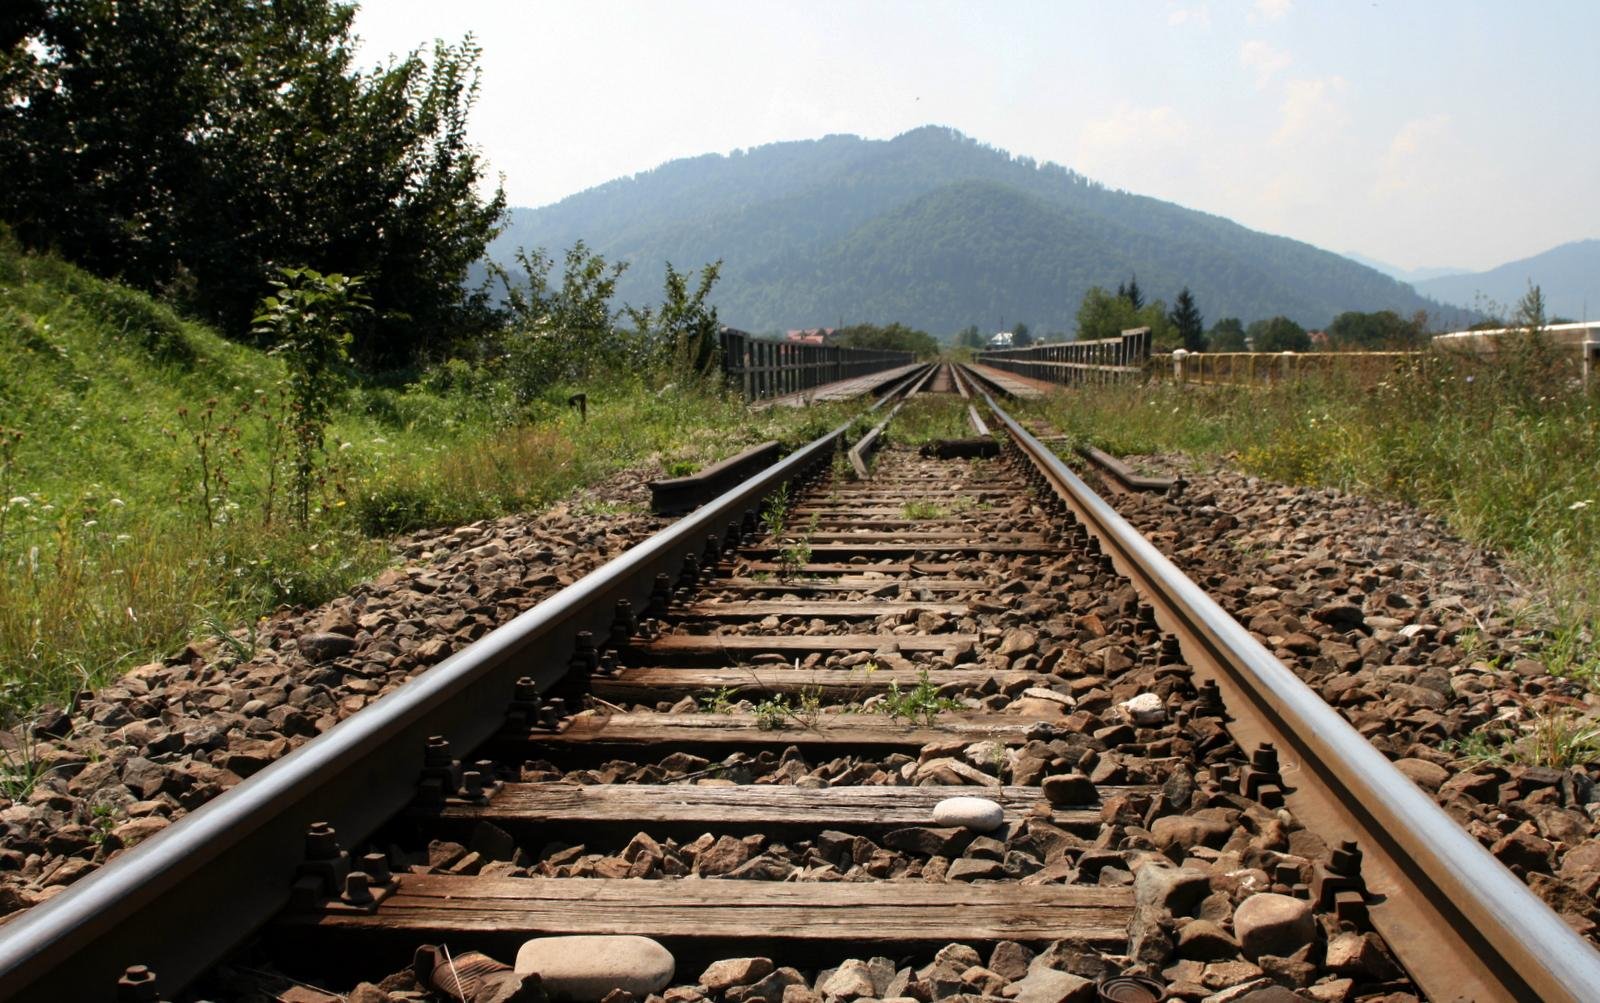 Աբխազիան առաջարկում է վերականգնել իր տարածքով Ռուսաստան-Հայաստան երկաթգիծը